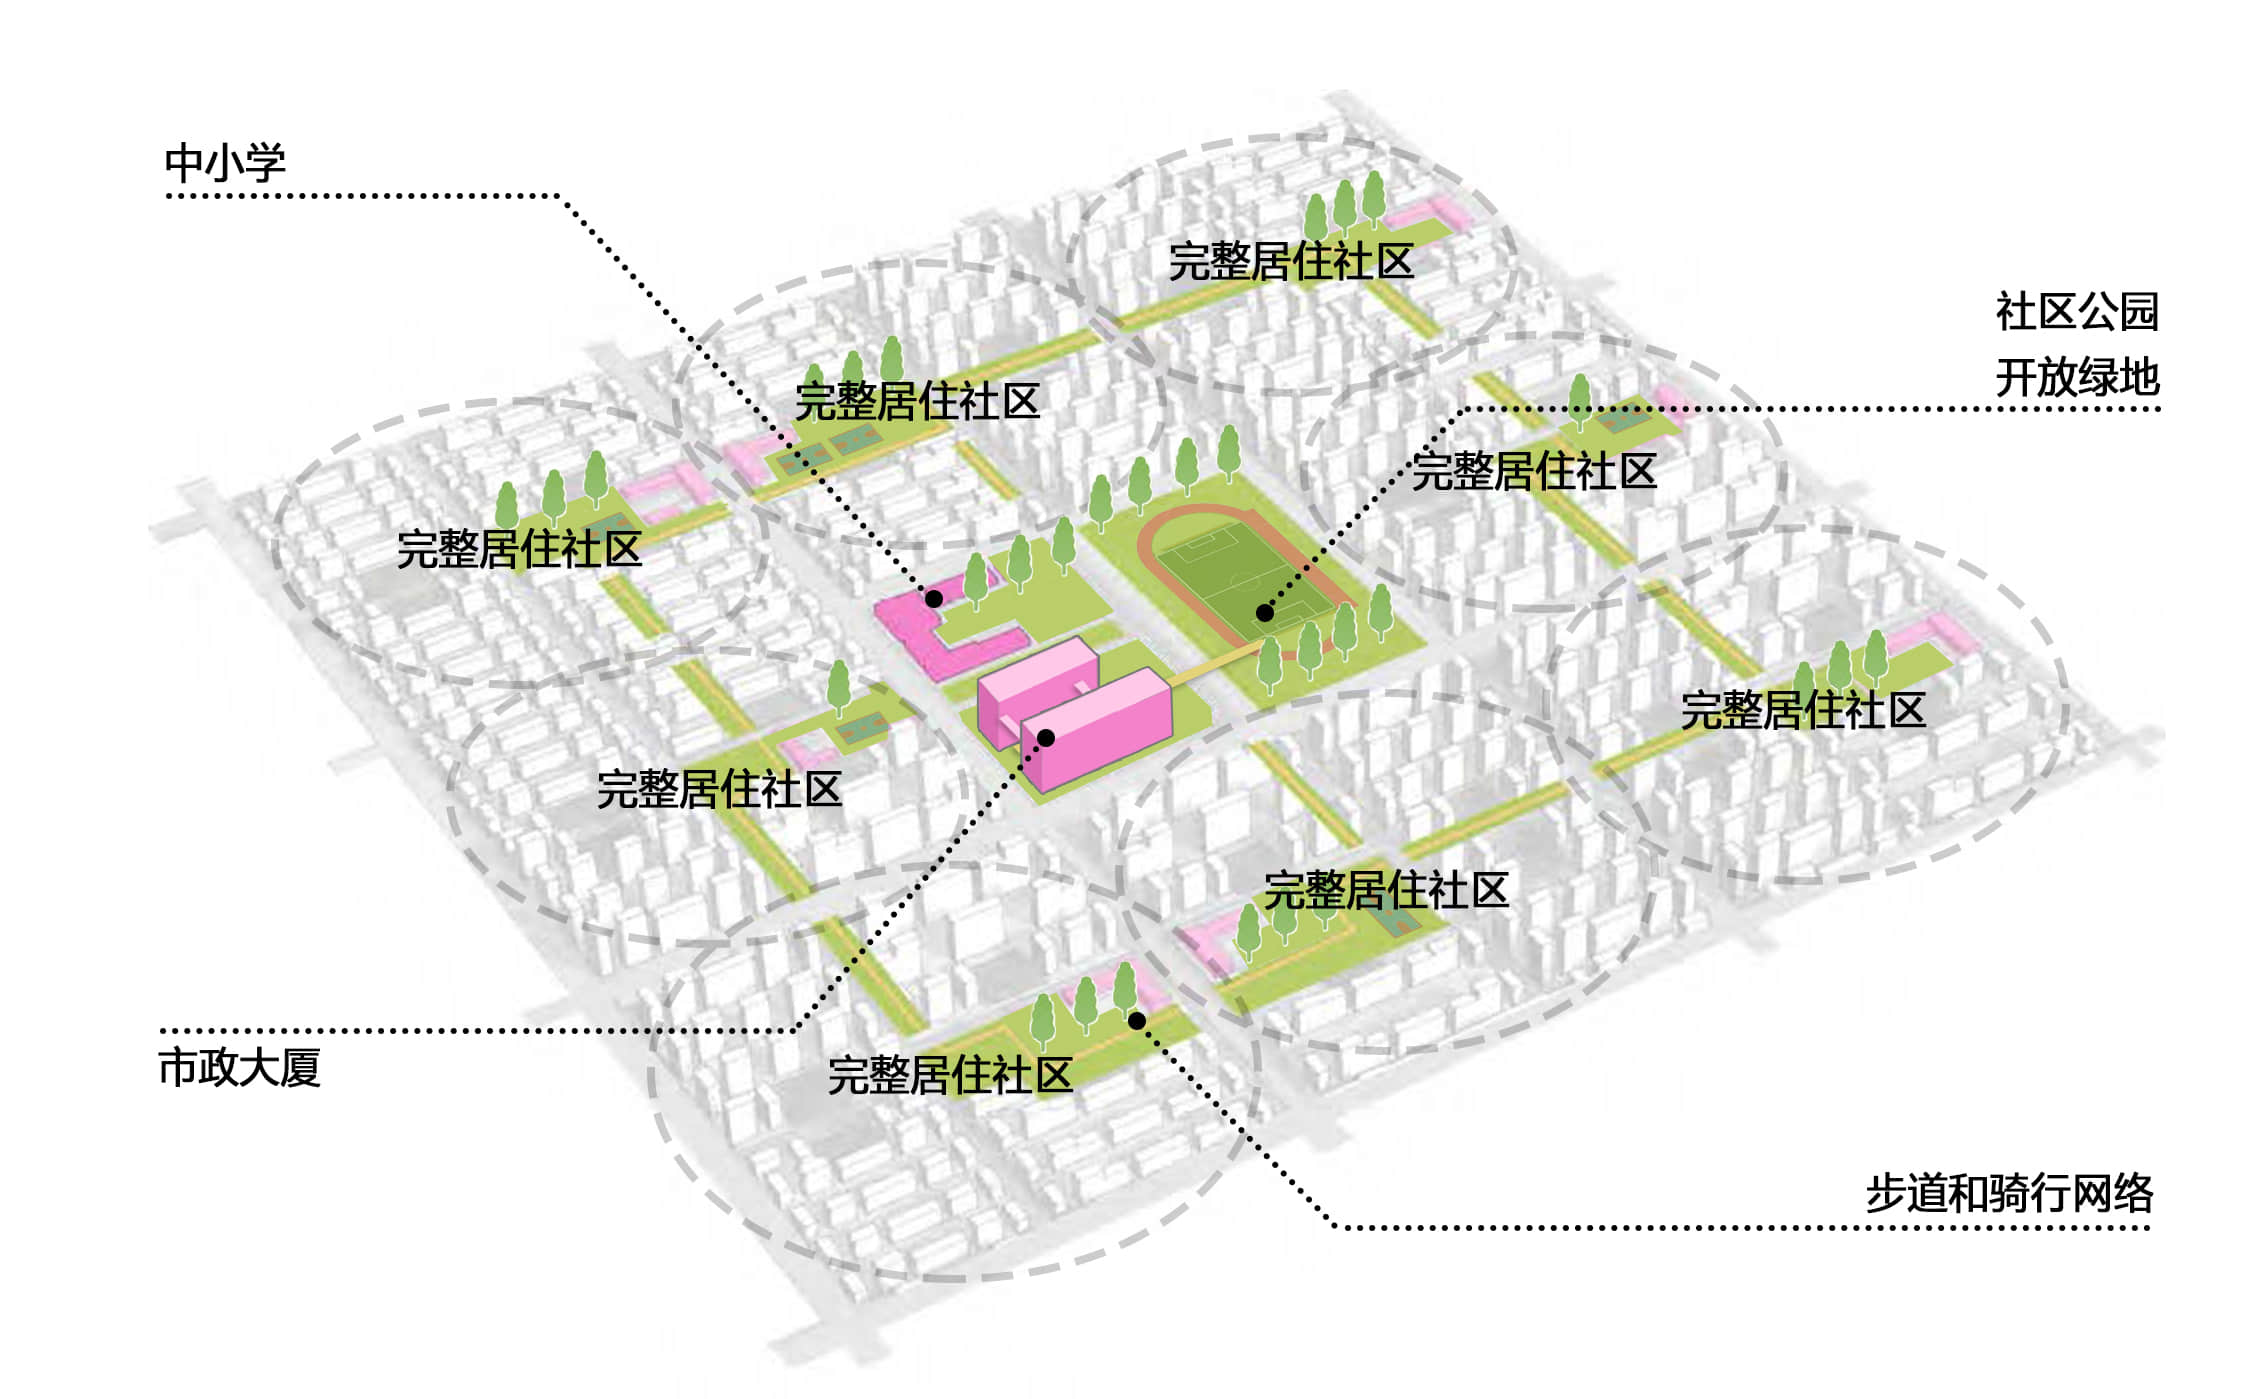 我们的建议：完整居住社区及“十五分钟生活圈”中的高密度公共建筑示意图 ©朱涛建筑